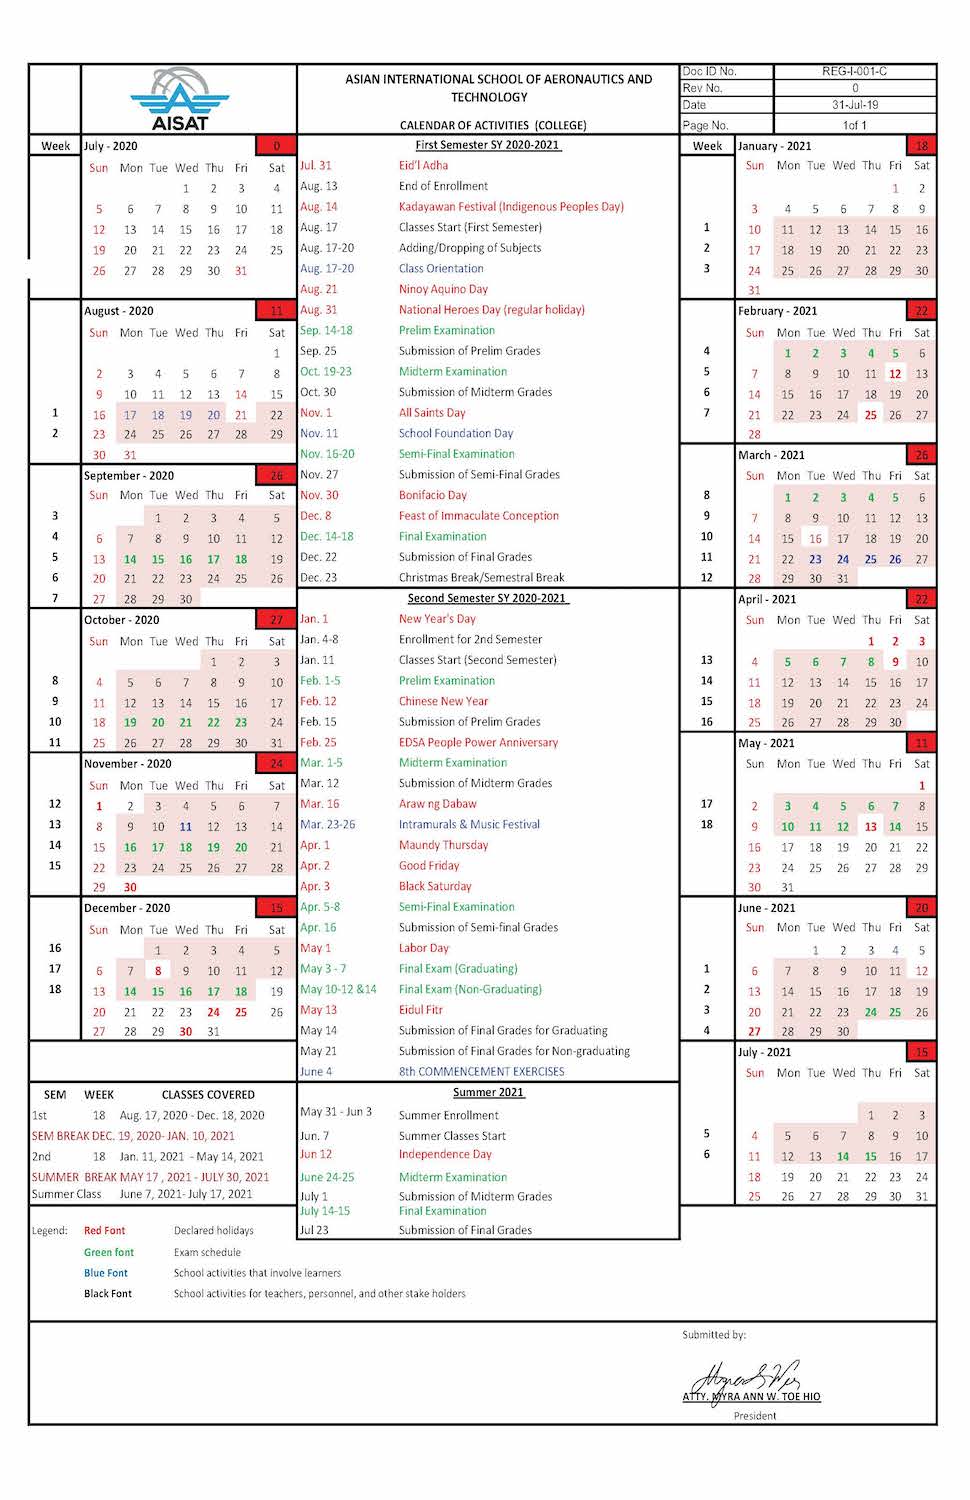 School Calendar AISAT